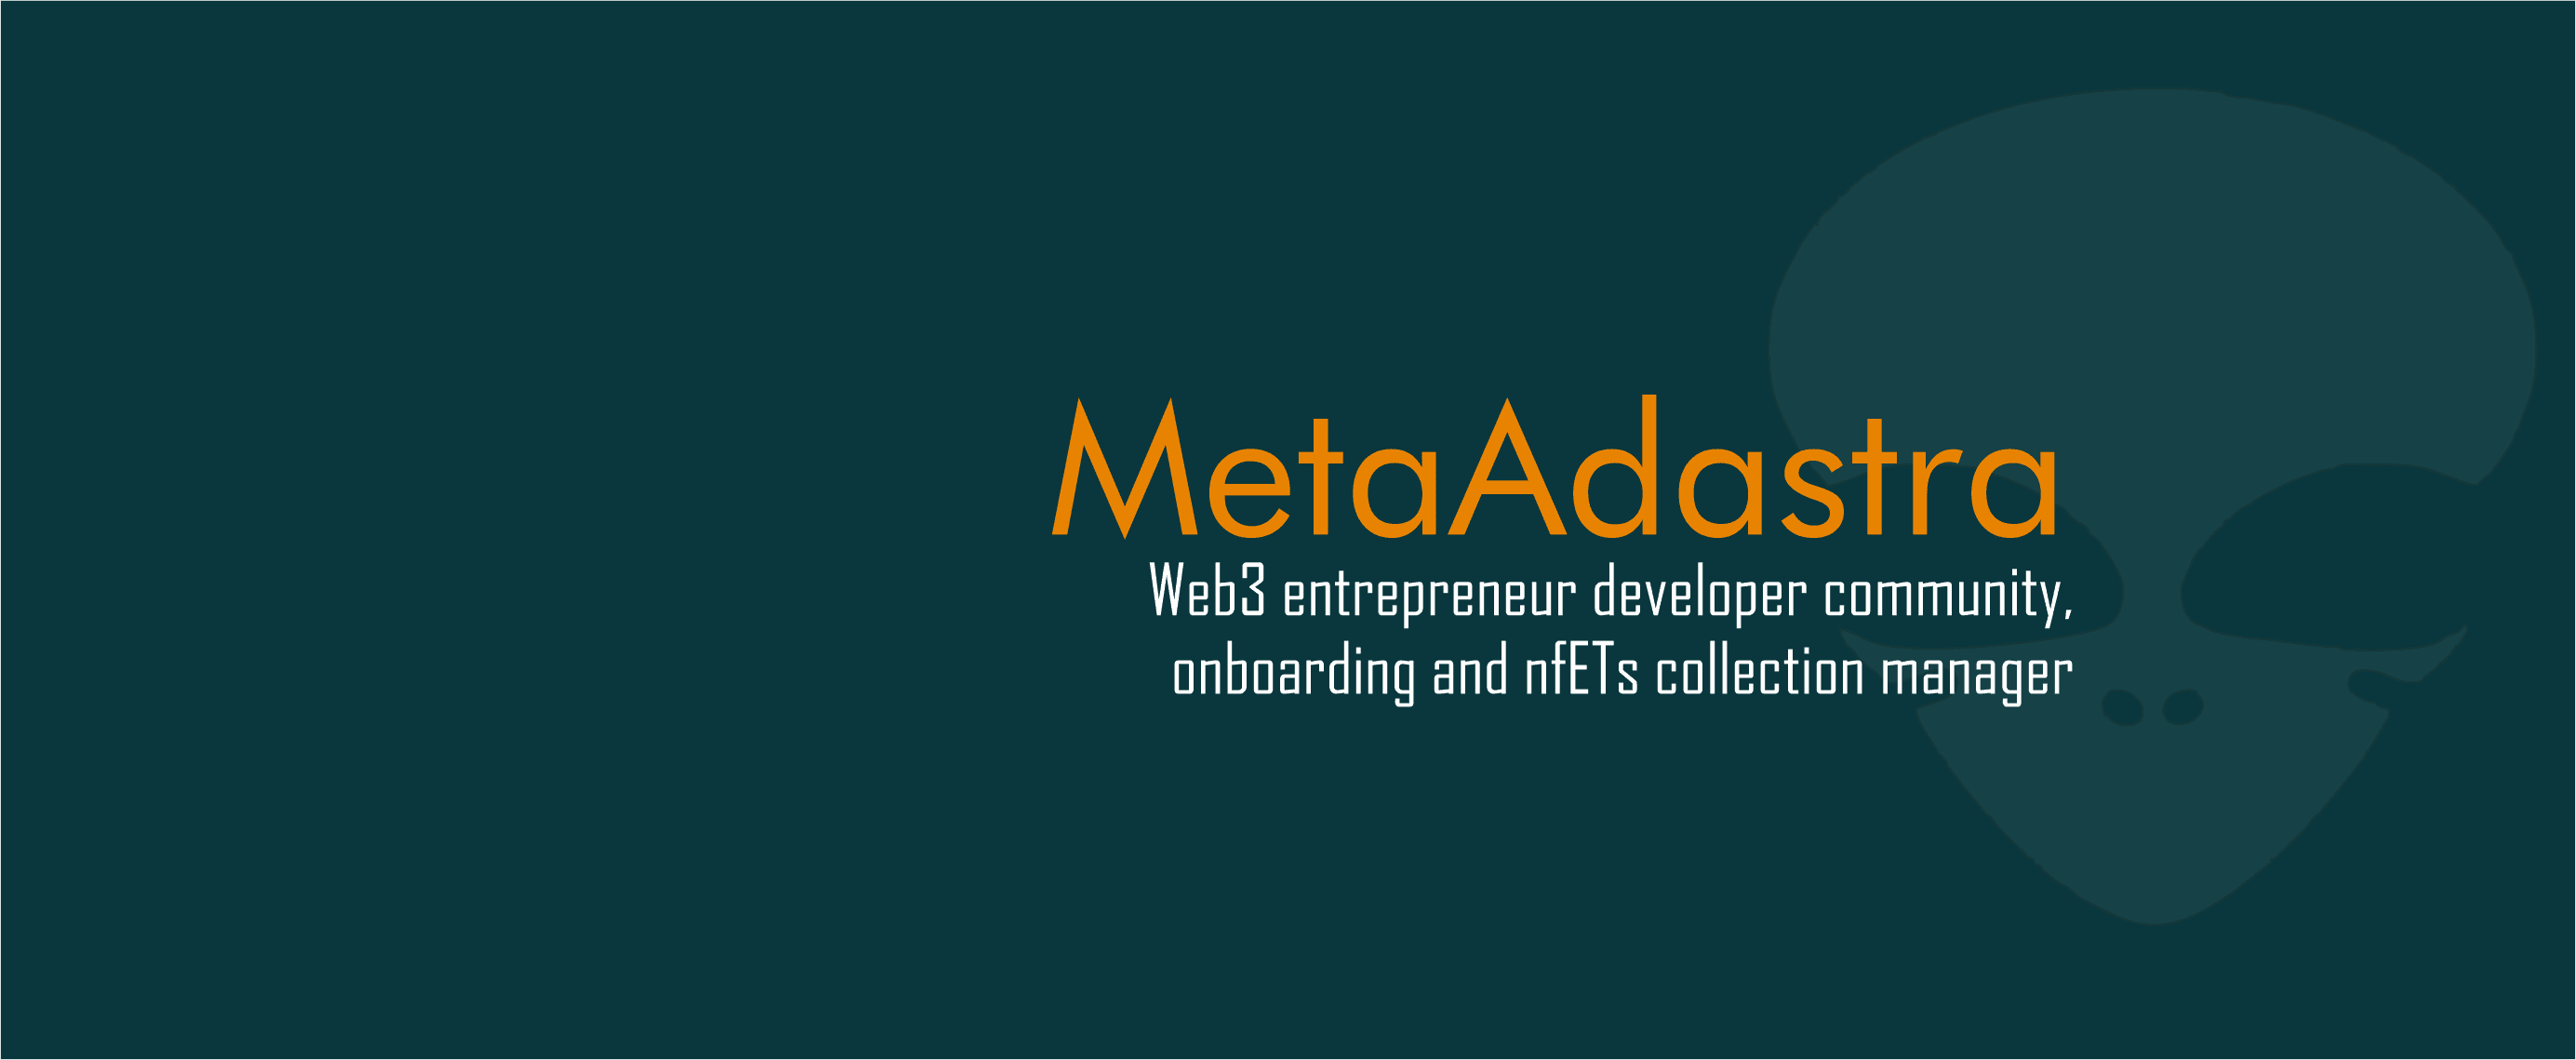 MetaAdAstra banner